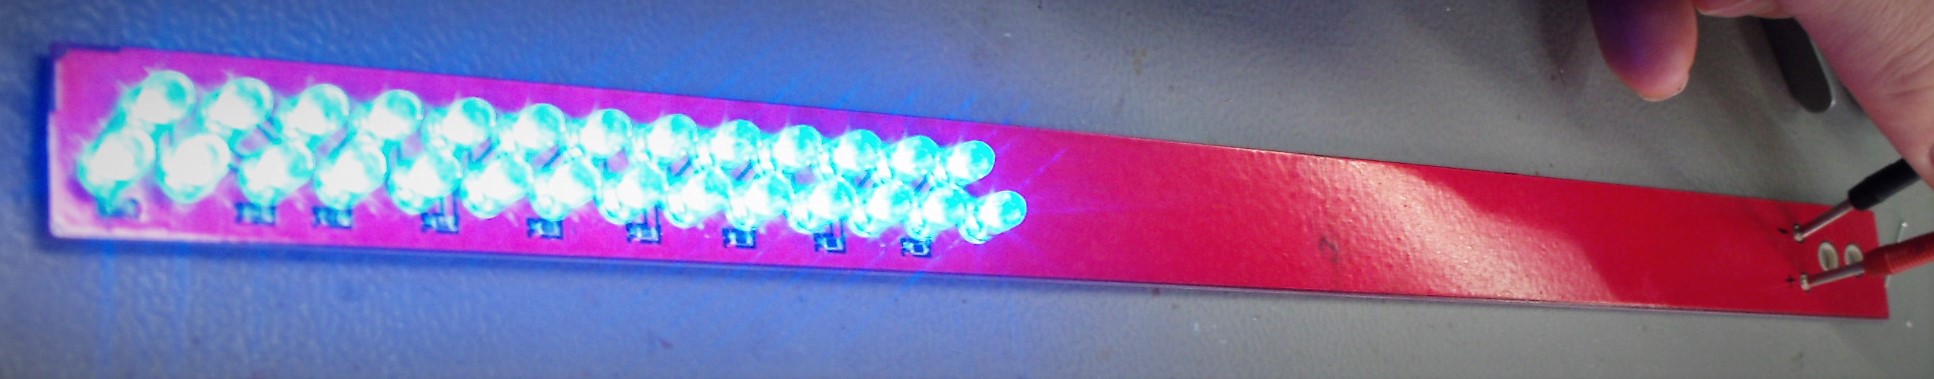 LED-Stäbe